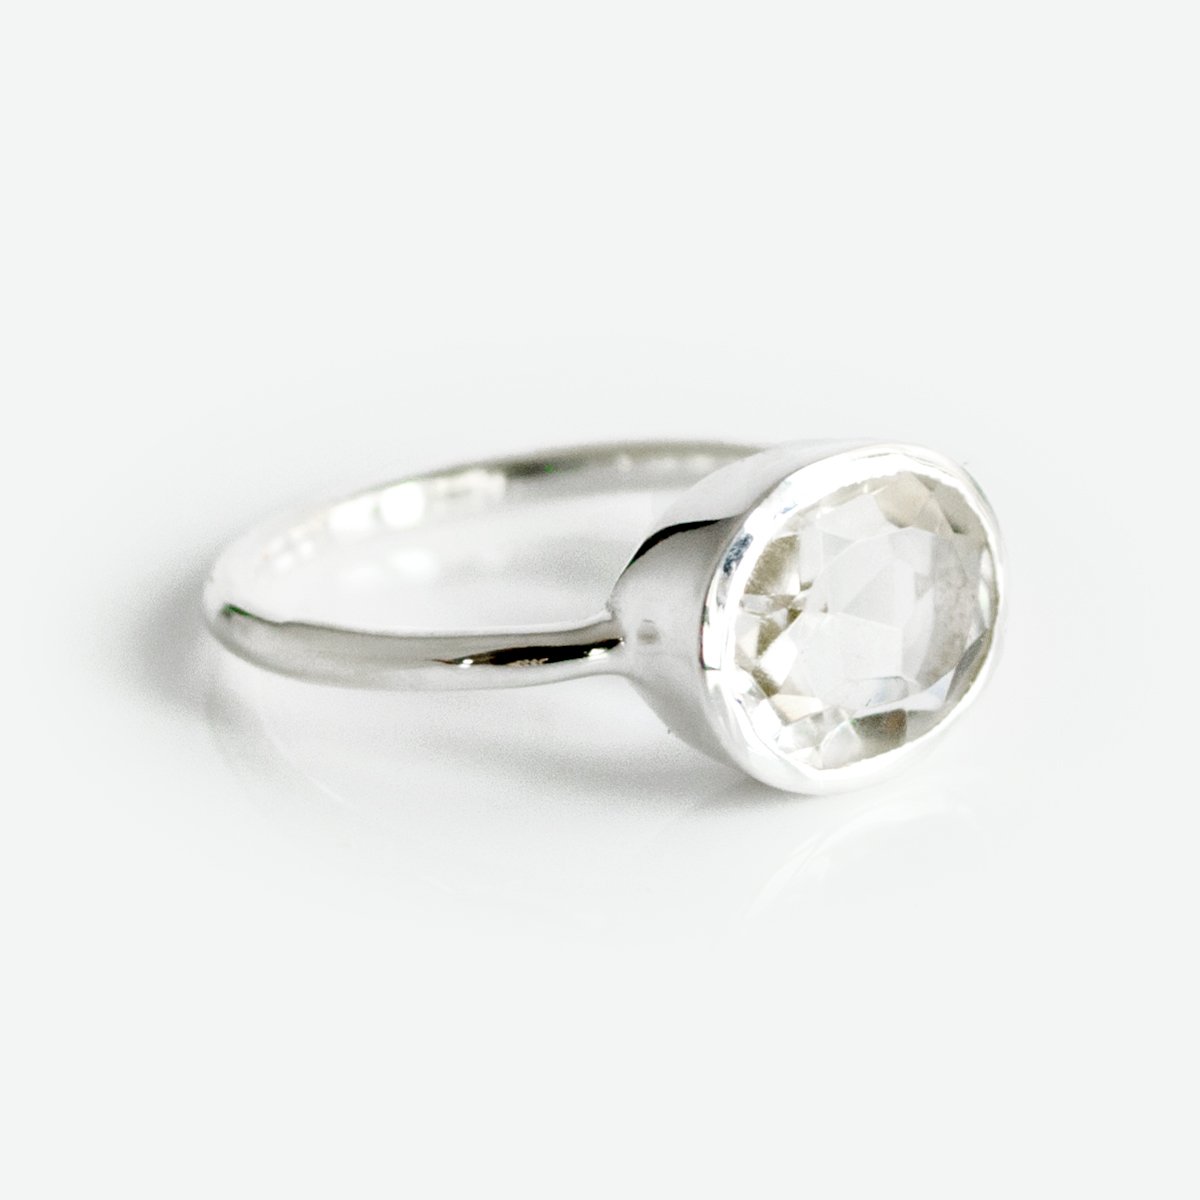 Crystal Clear Quartz Ring